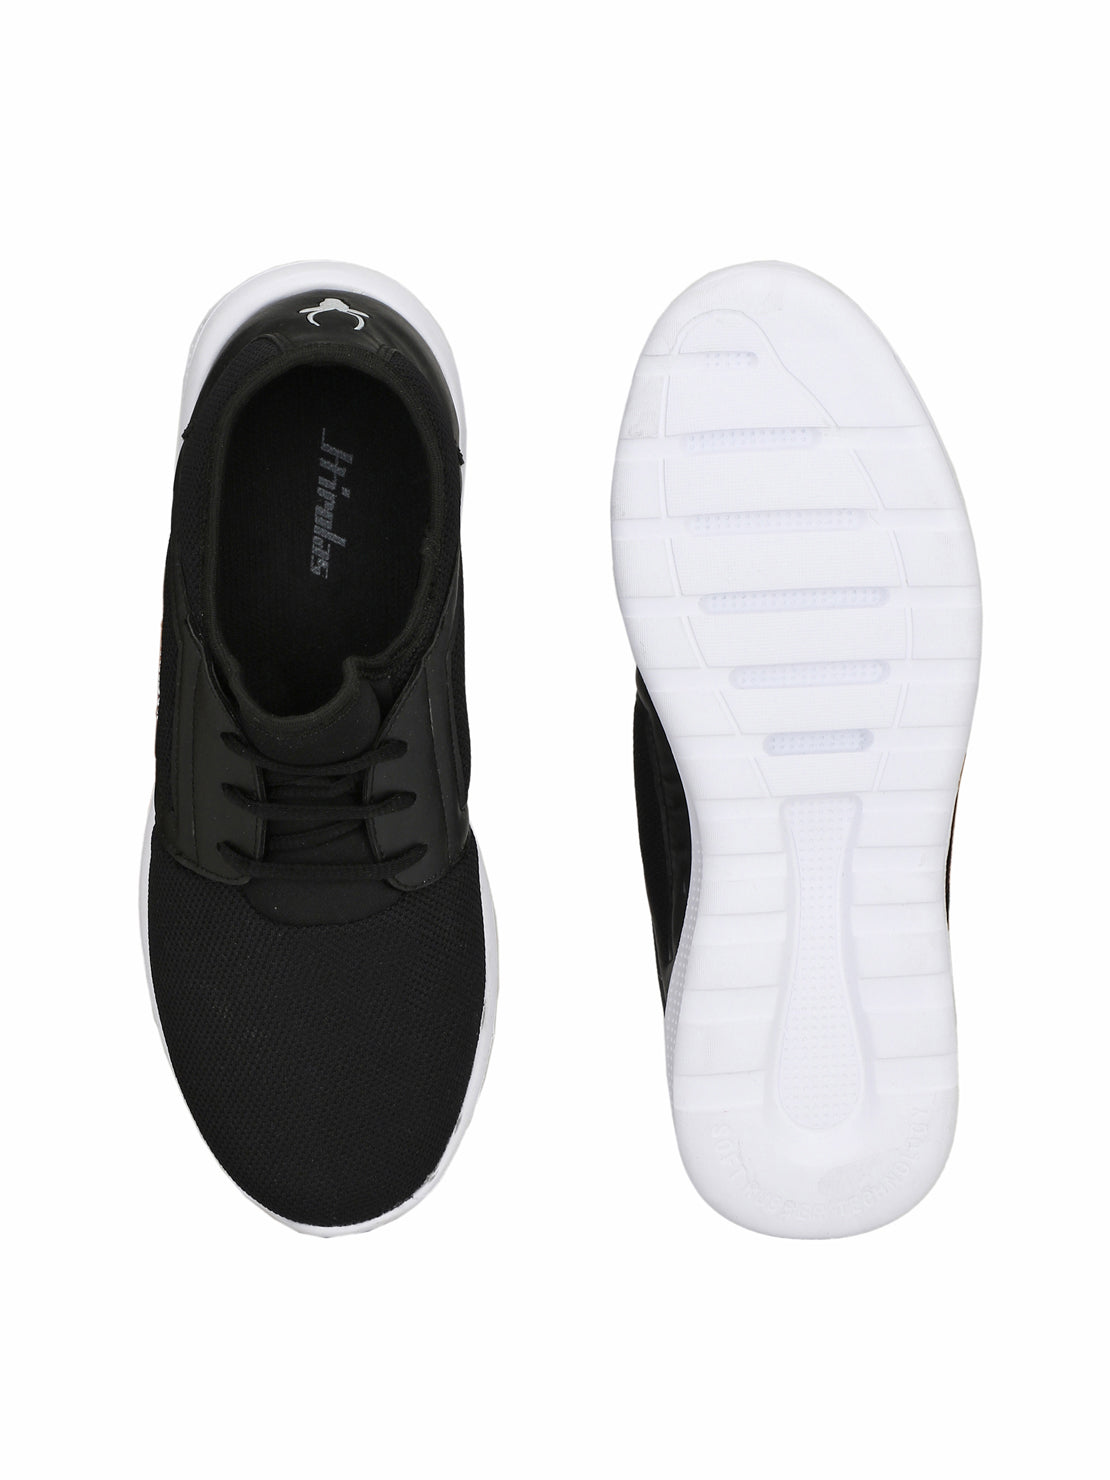 Hirolas® Men's Jezz Black Lace Up Athleisure Sport Shoes (HRL1951CBK)